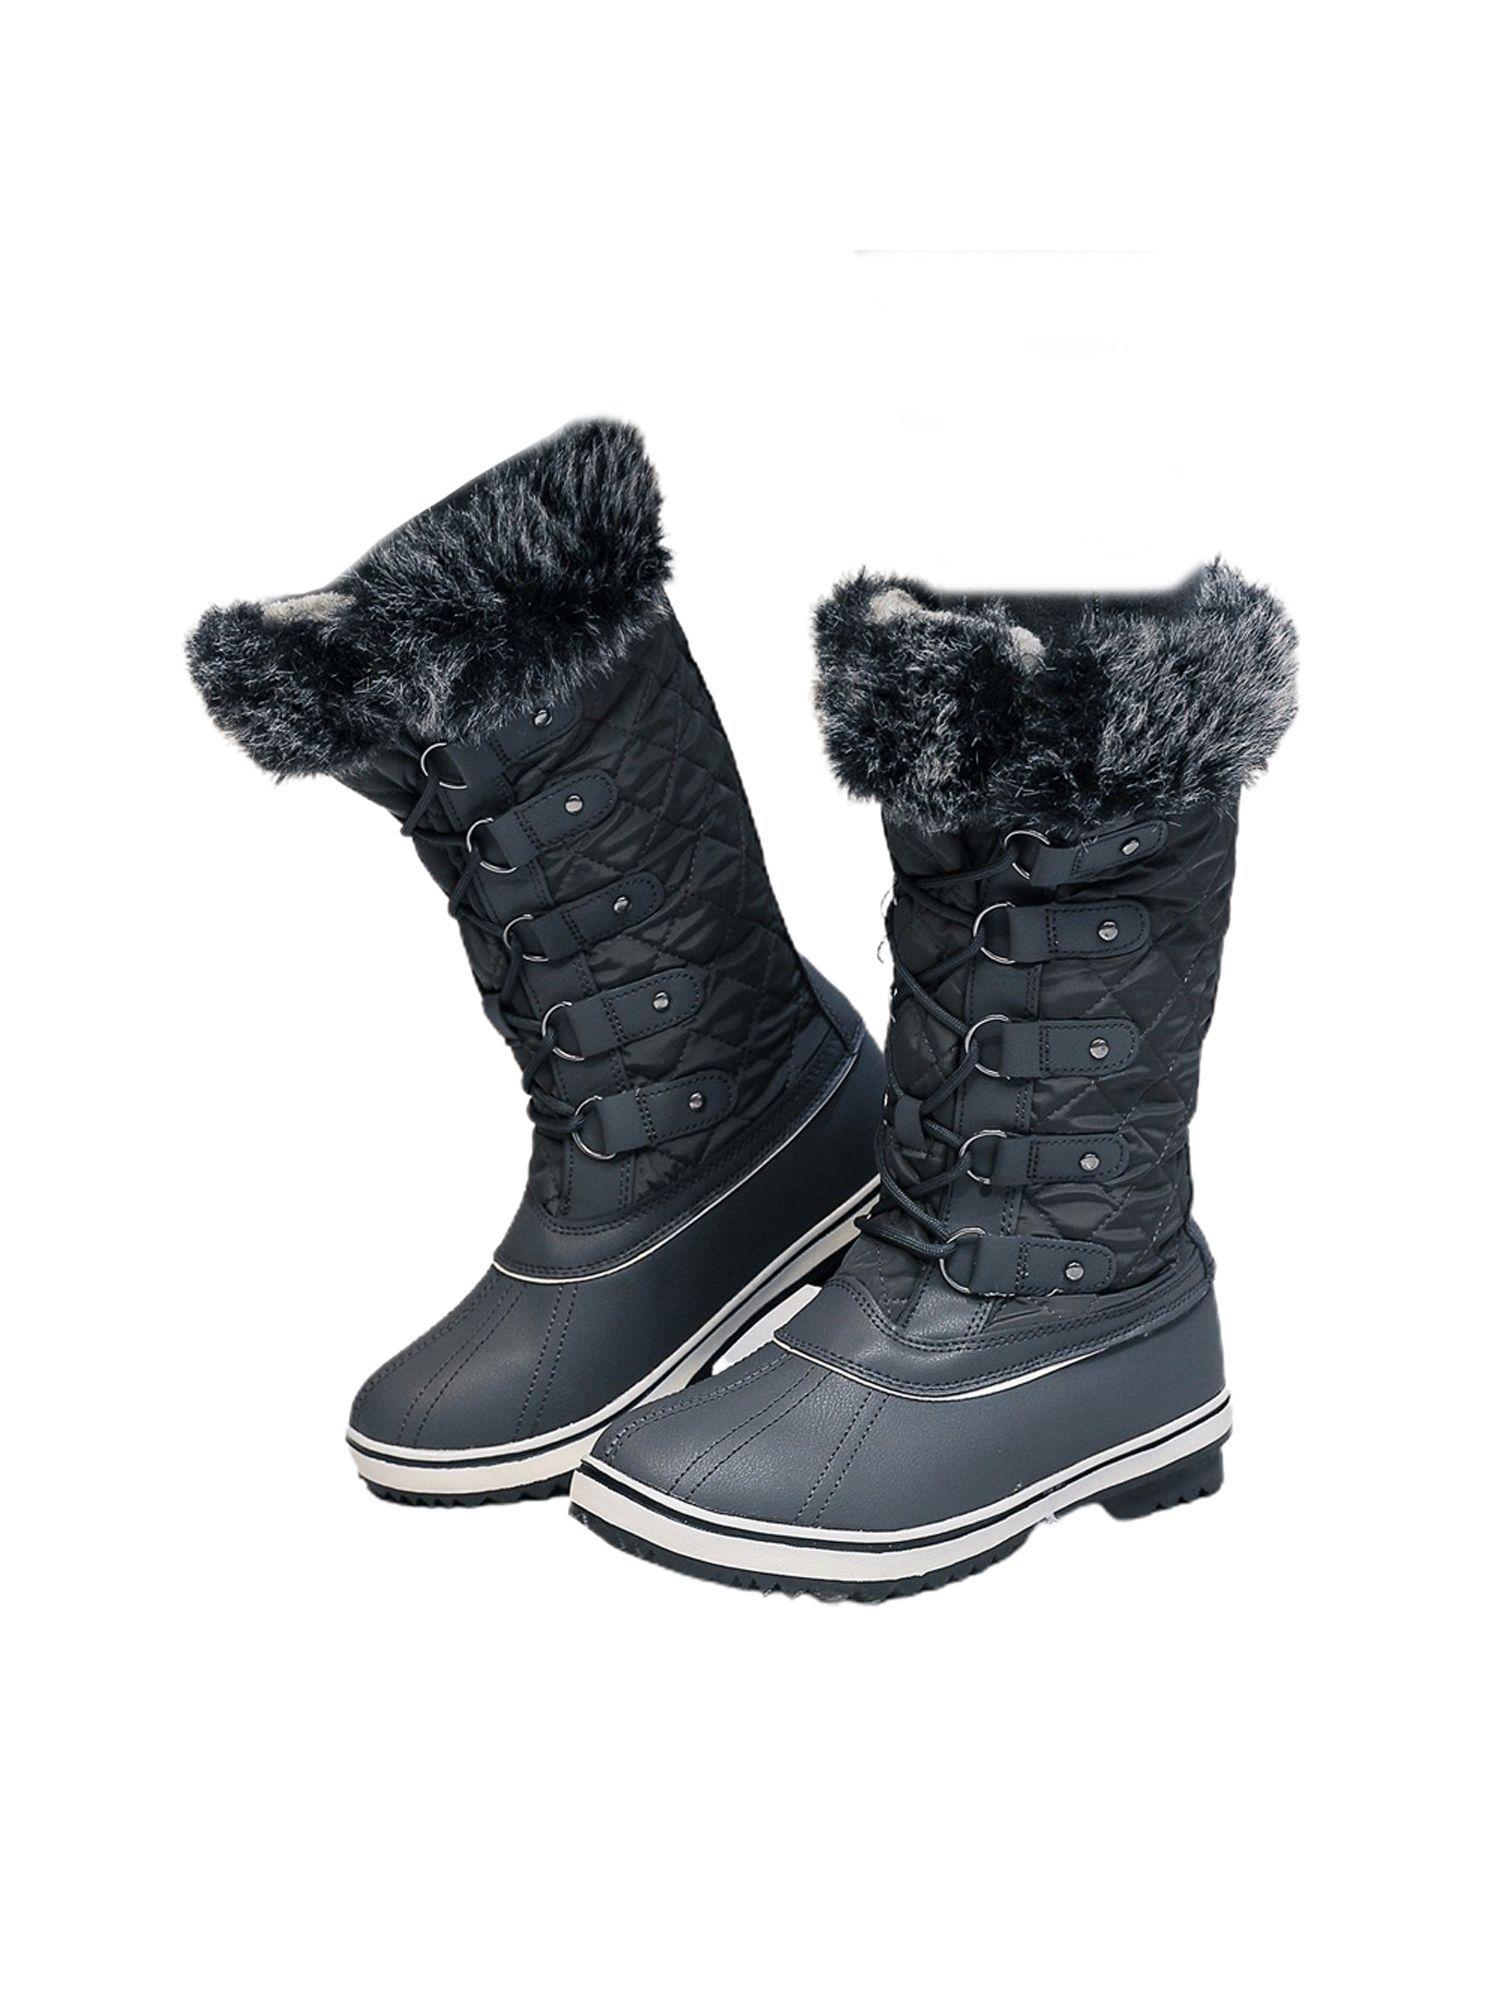 grey criss cross girls winter snow boots